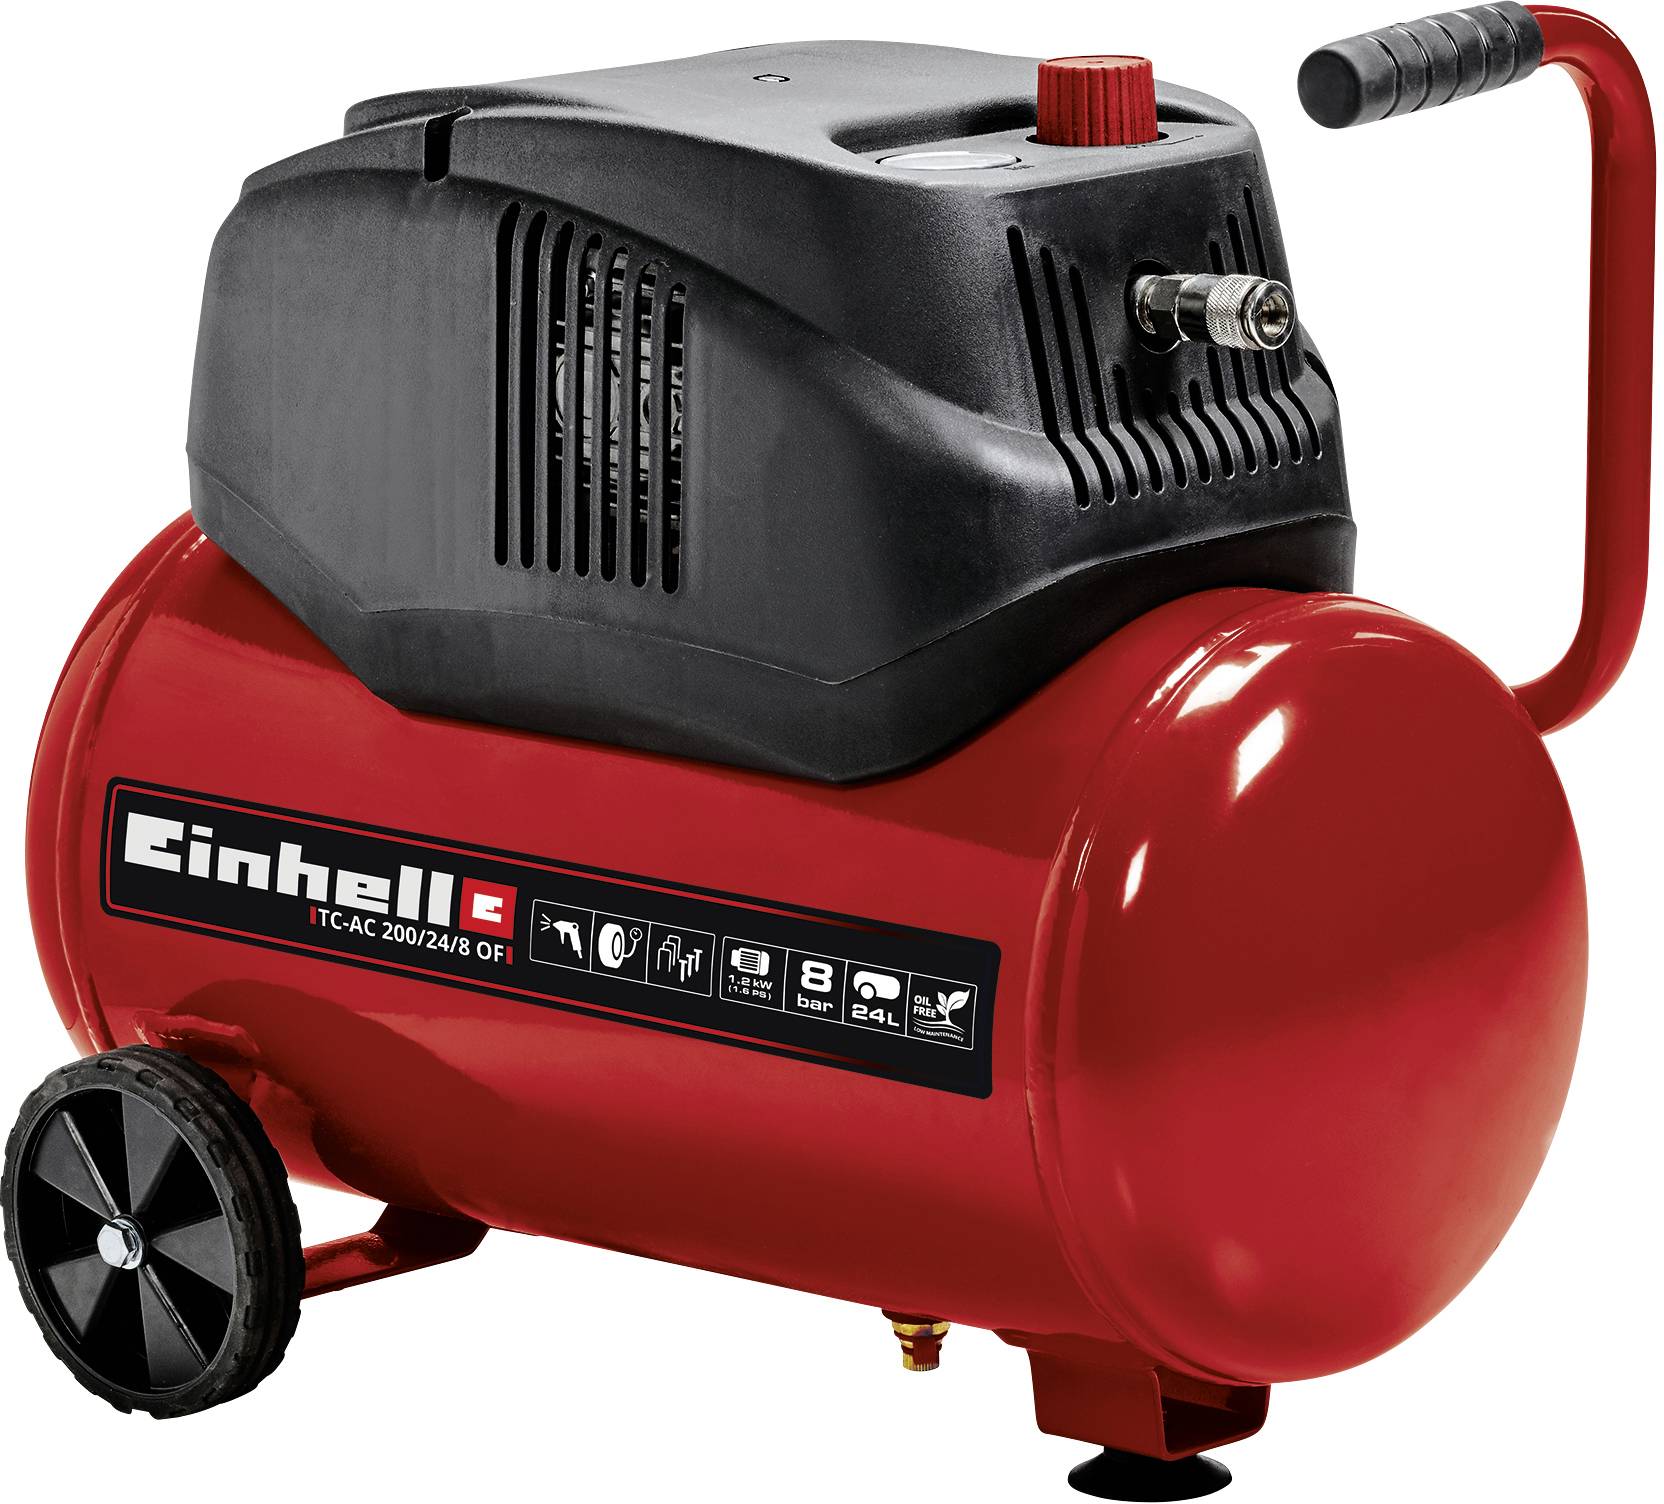 EINHELL TC-AC 200/24/8 OF Kompressor (4020590)